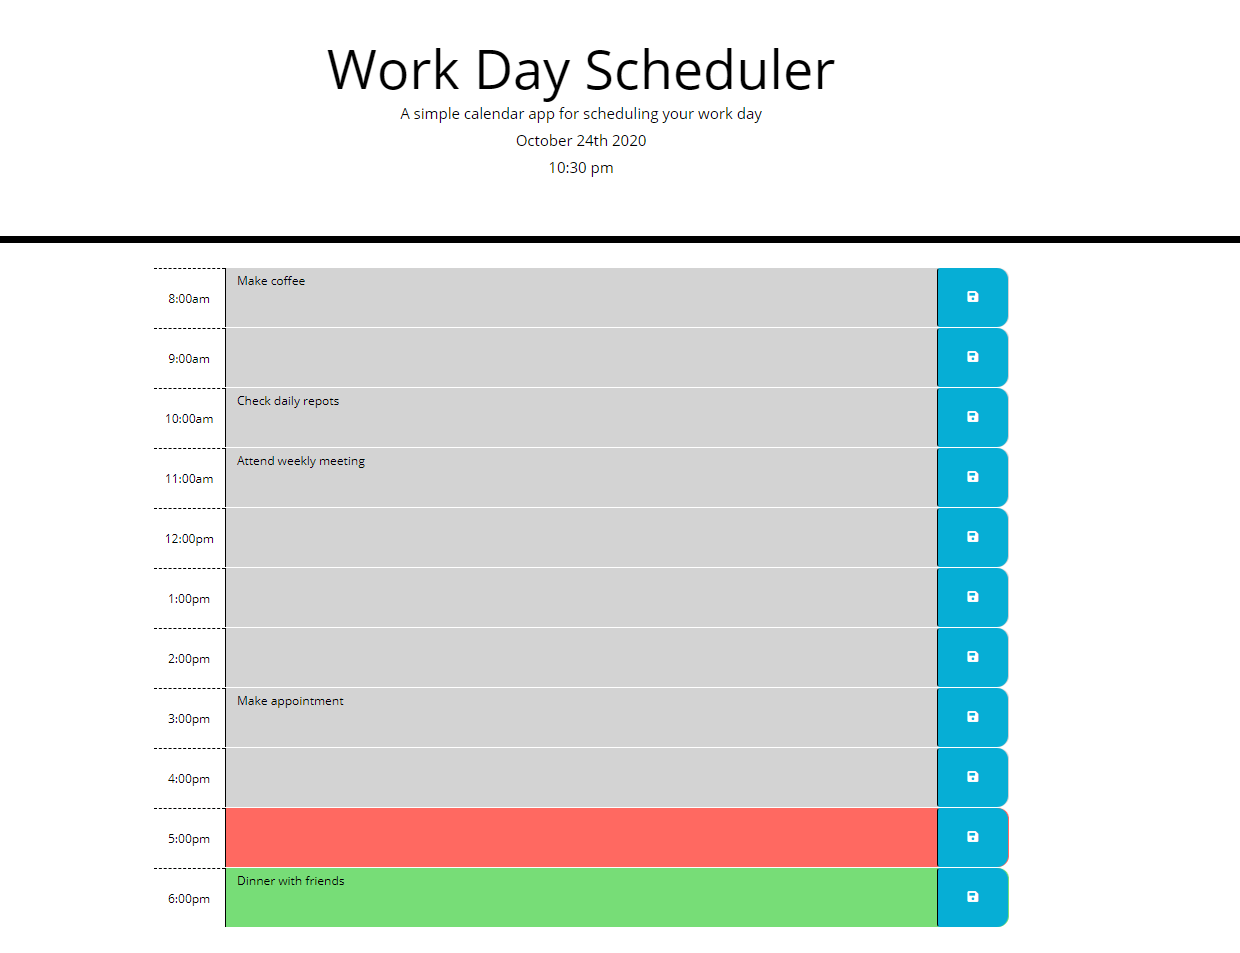 Work-Day-Scheduler-Image